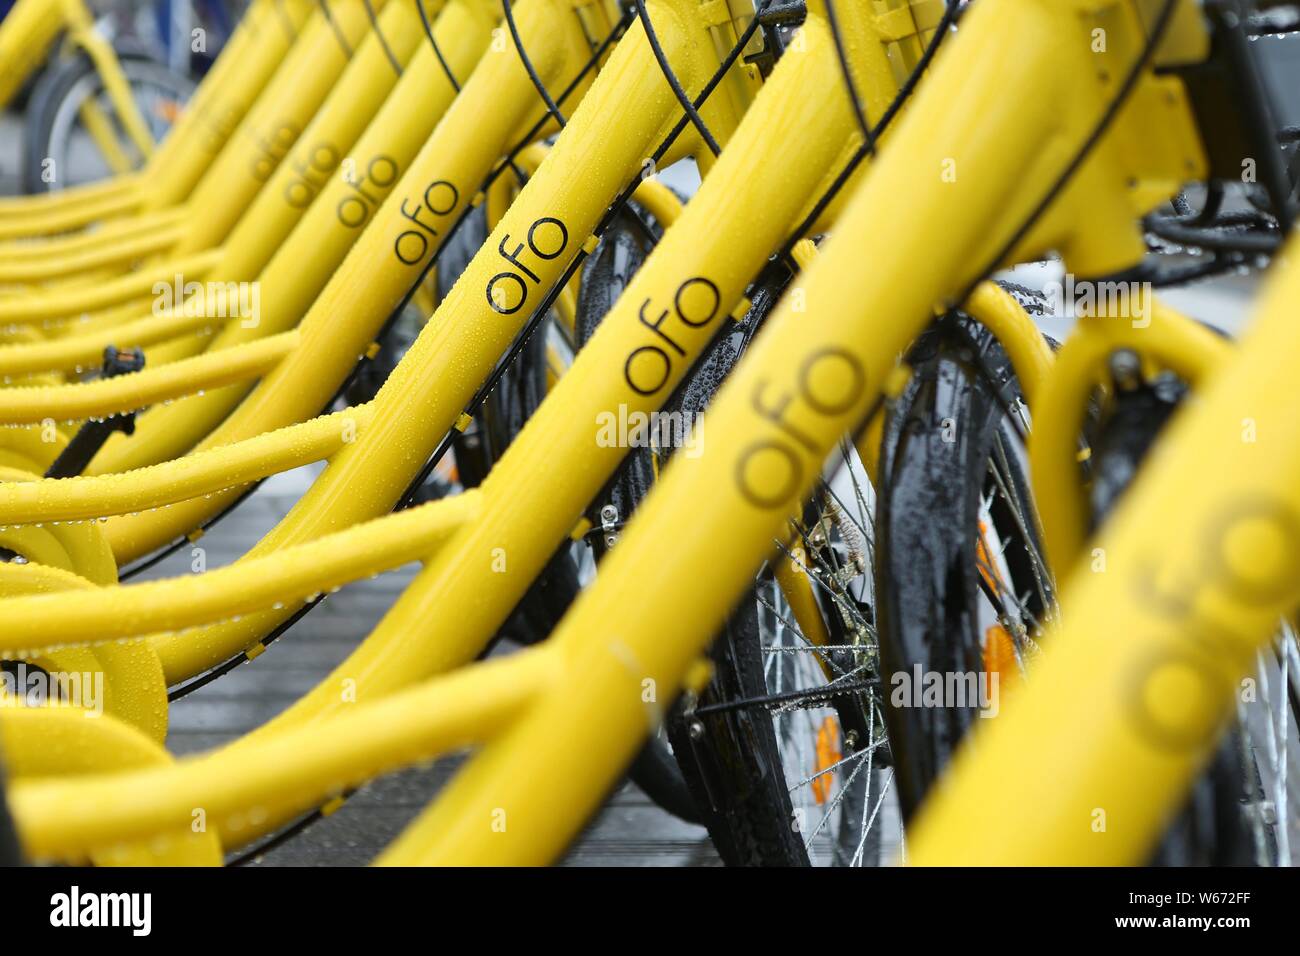 ------ Fahrräder der Chinesischen bike-sharing Diensten gehalten sind, auf einer Straße in Shanghai, China, 10. April 2017 gesäumt. Ofo, Chinesisch Station - kostenloser Fahrradverleih sh Stockfoto